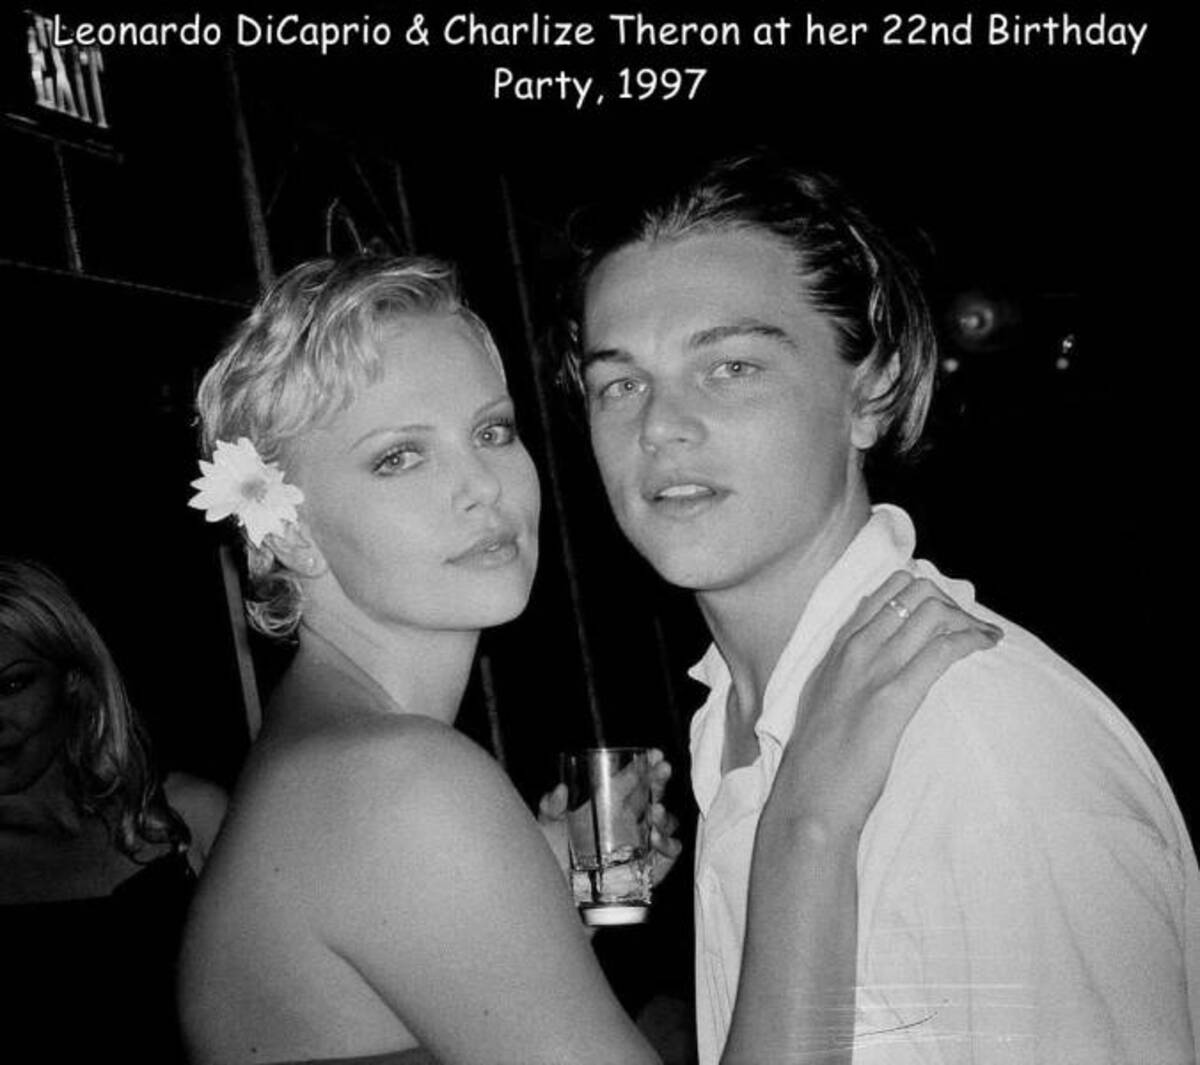 charlize theron and leonardo dicaprio - Leonardo DiCaprio & Charlize Theron at her 22nd Birthday Party, 1997